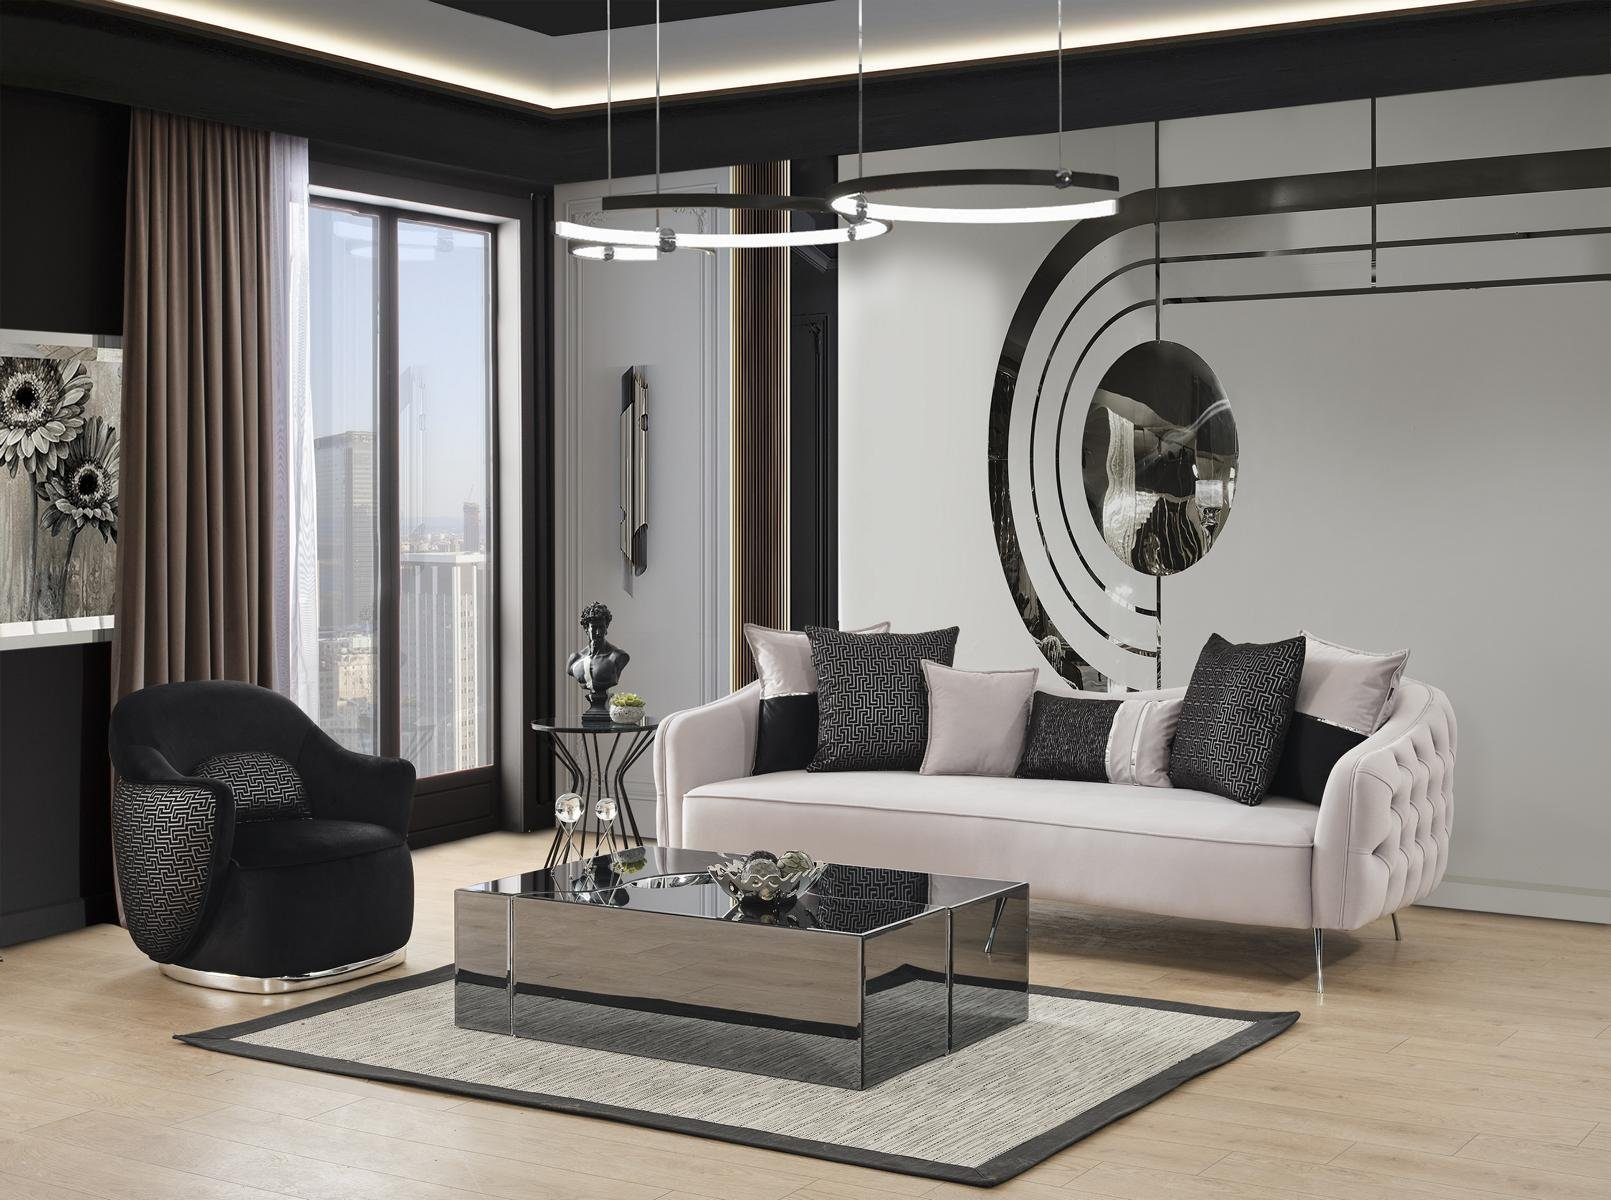 JVmoebel Couchtisch Couchtisch Glas Design Modern Luxus Möbel Neu Neu Wohnzimmer